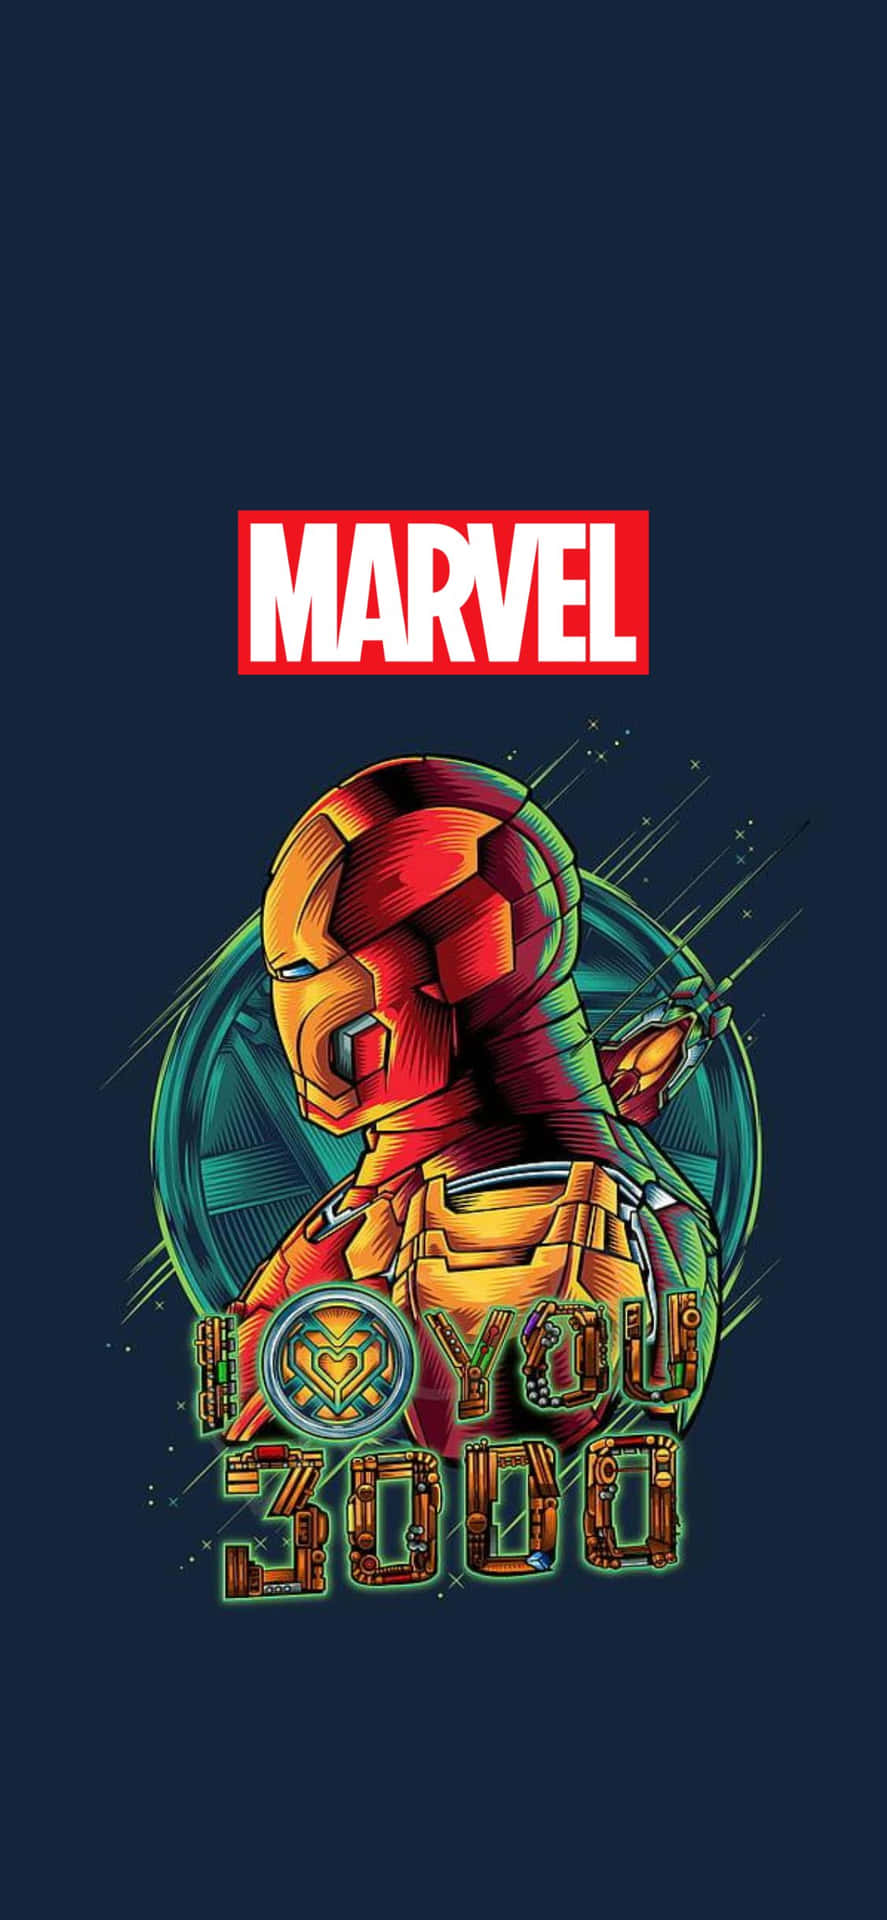 Ichliebe Dich 3000 Iron Man Iphone Xs Hintergrund Von Marvel.